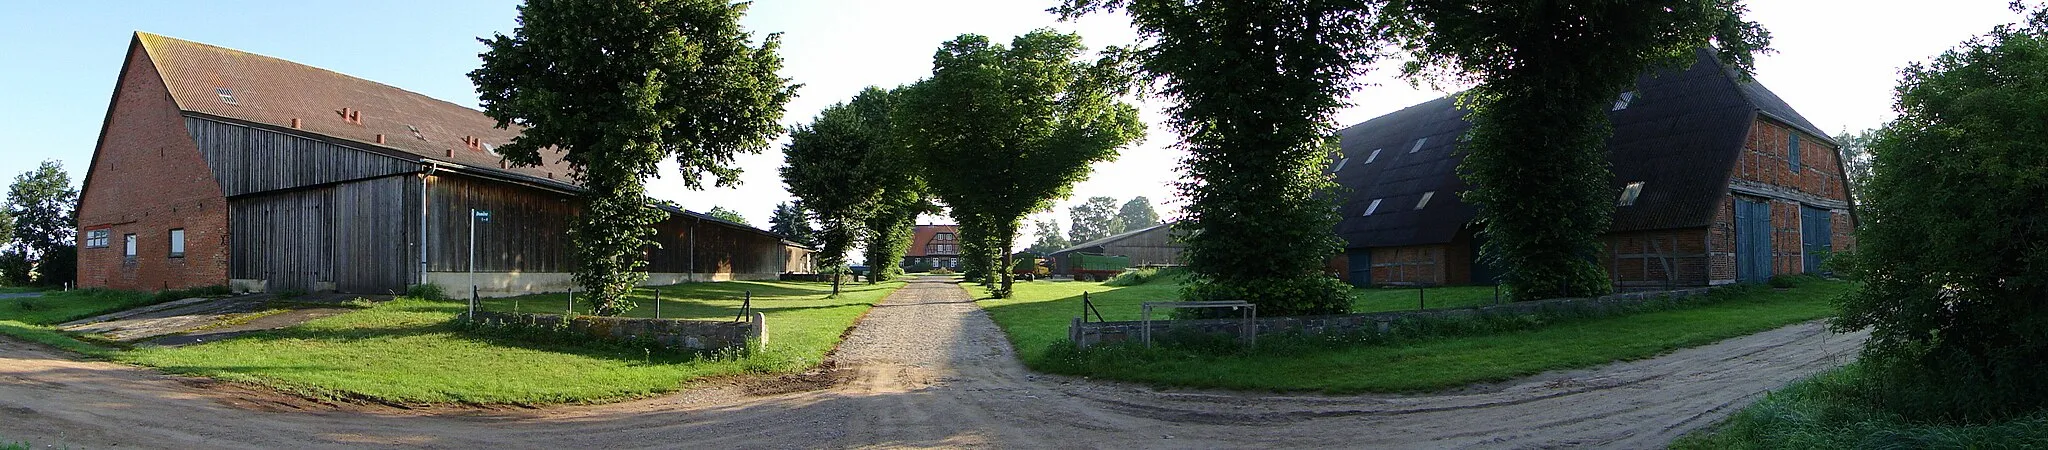 Photo showing: Manor in Kittlitz, disctrict Herzogtum Lauenburg, Schleswig-Holstein, Germany